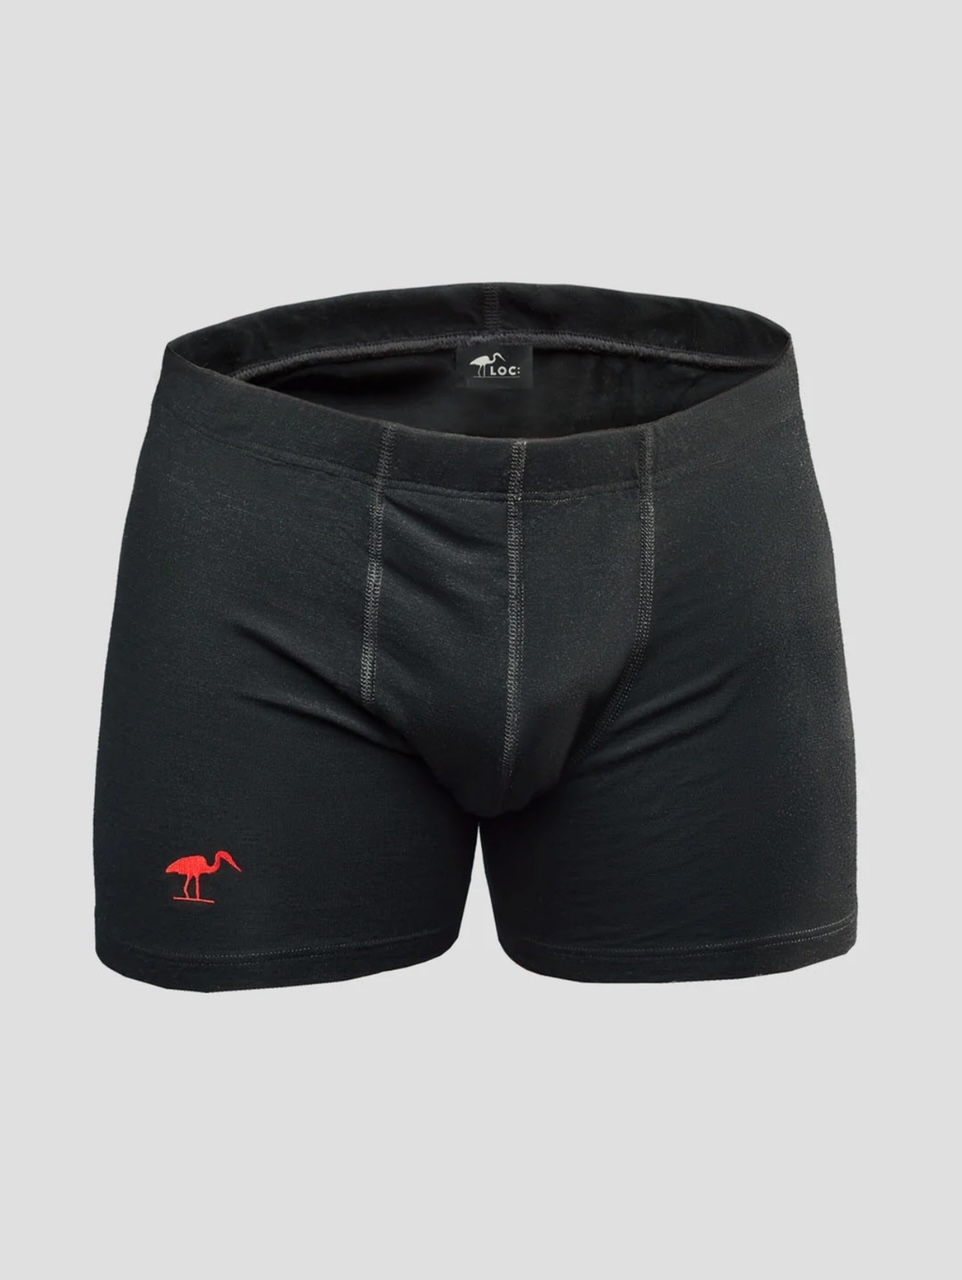 LOC Merino Boxer Shorts - Size Large